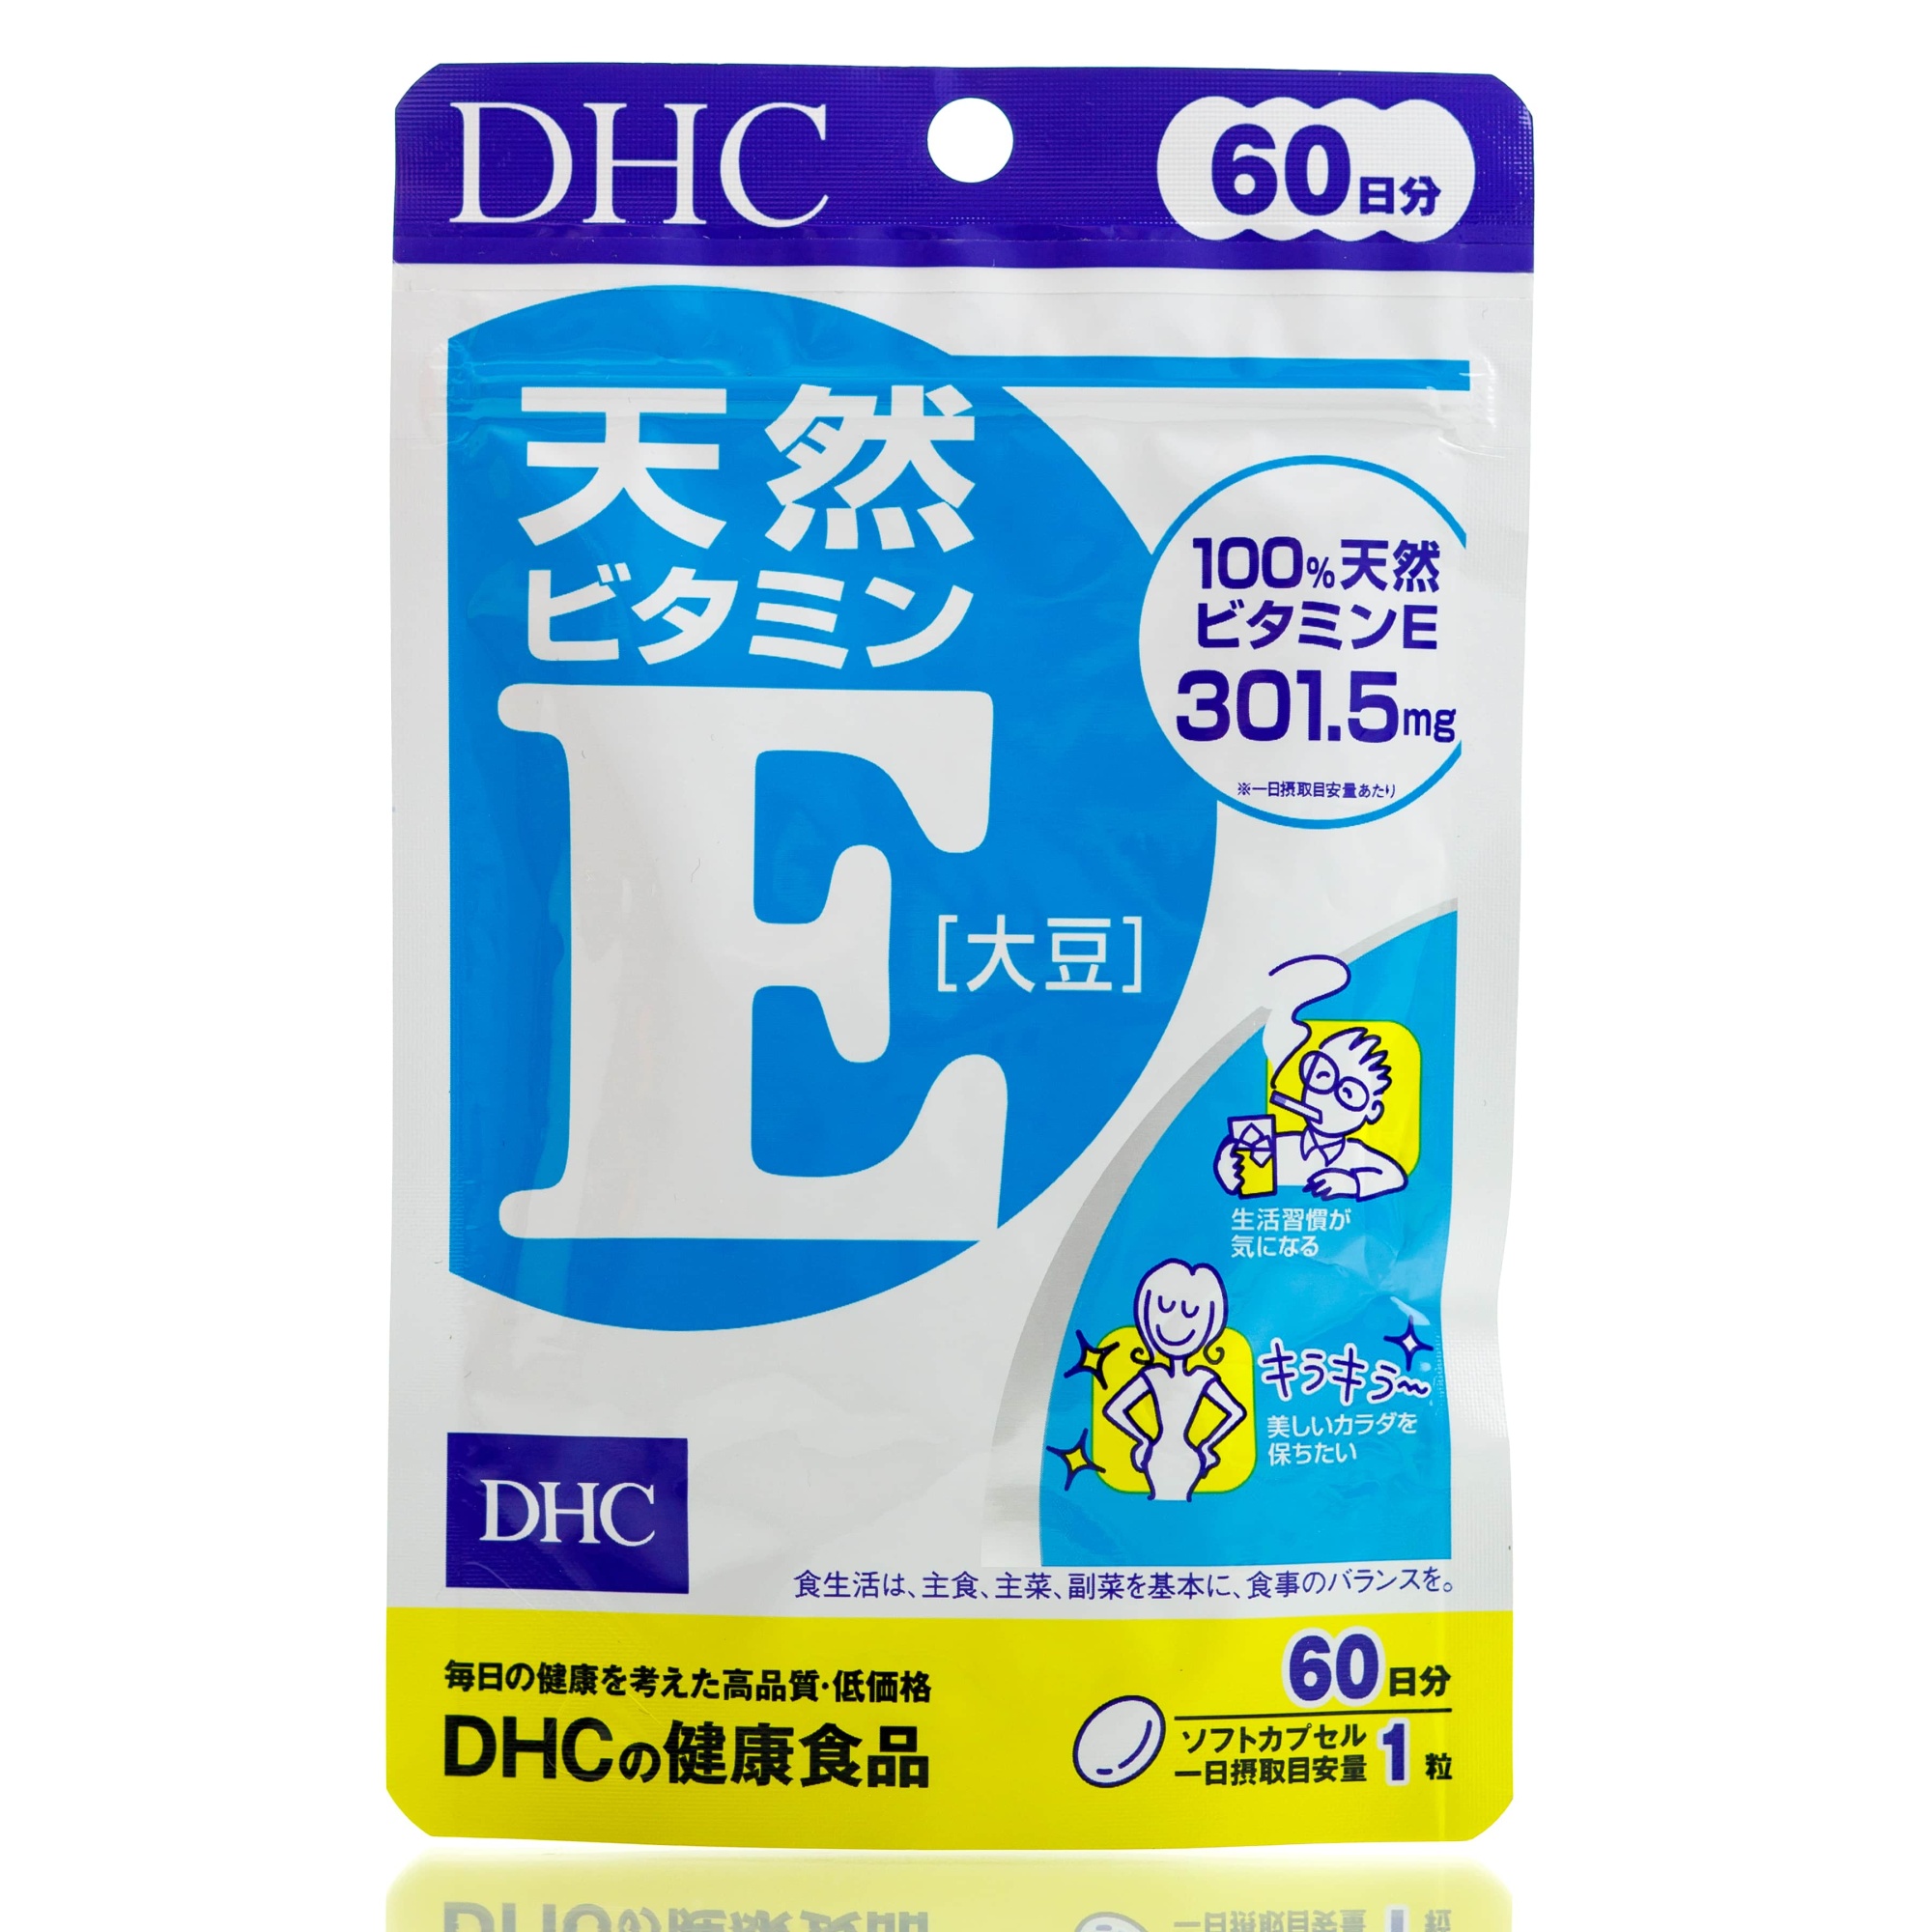 Натуральный витамин Е DHC на 60 дней для молодости и красоты